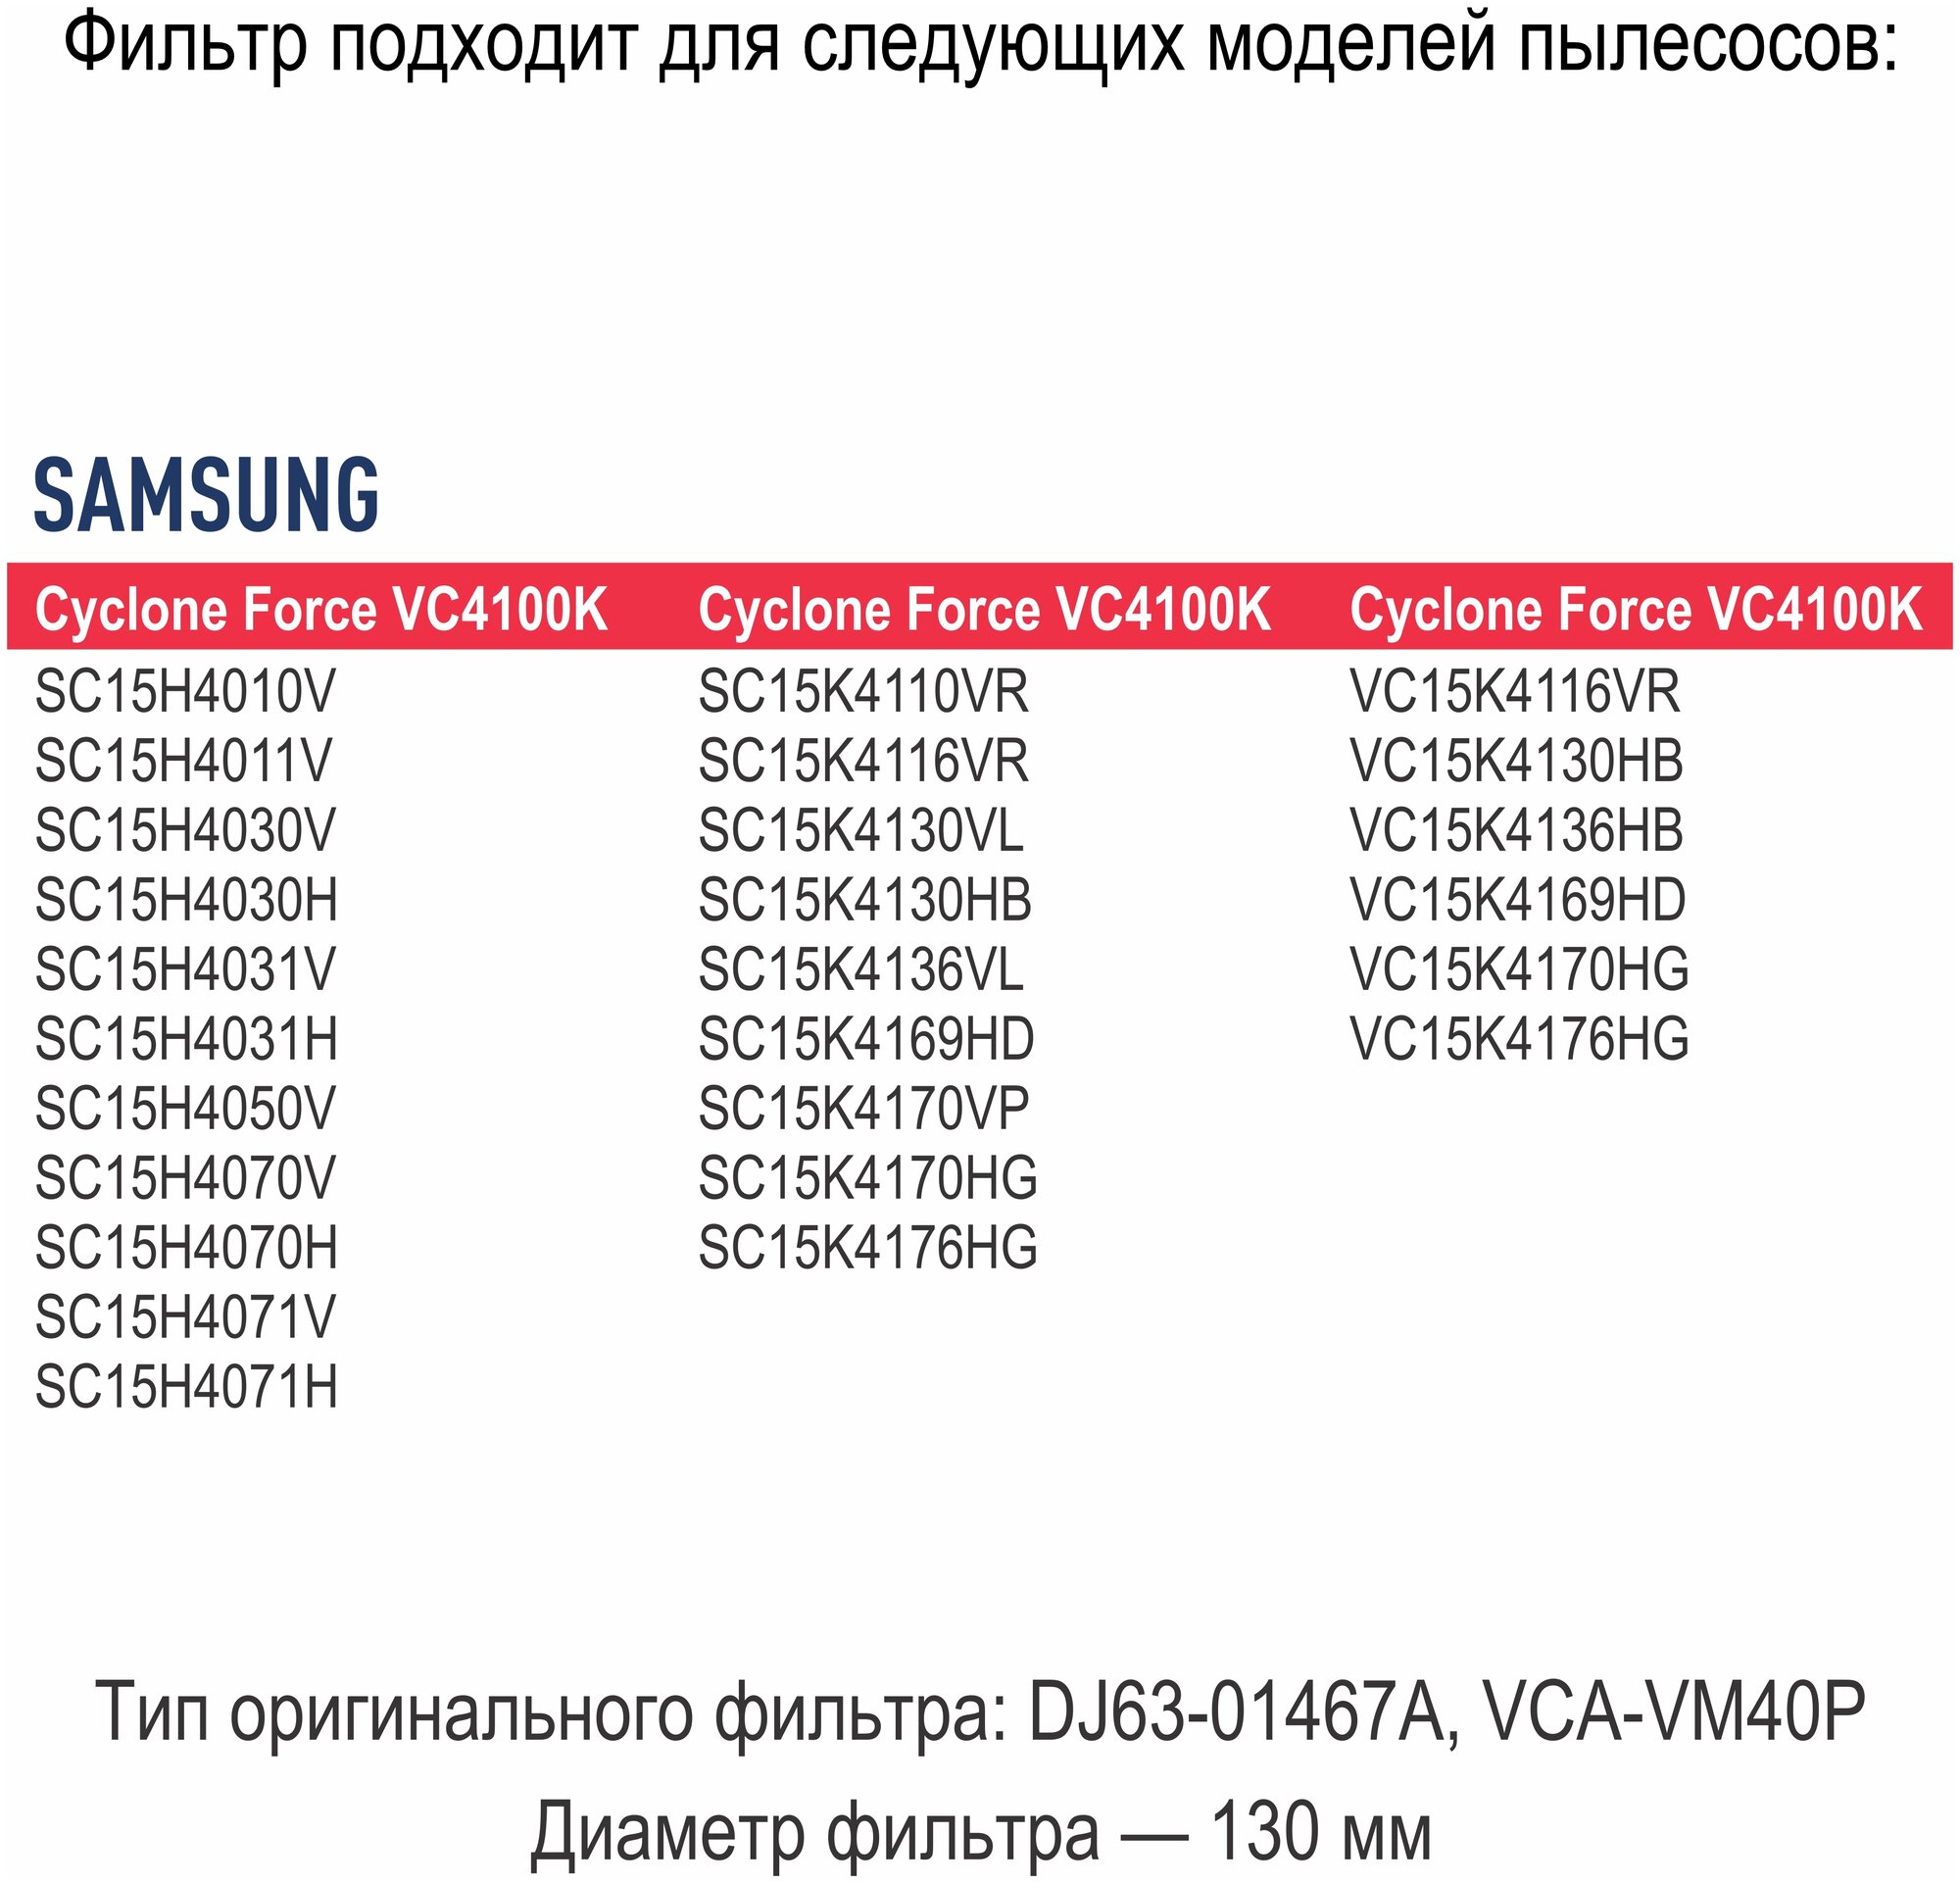 Фильтр TOPPERR , для пылесосов Samsung серии Cyclone Force VC4100K - фото №6